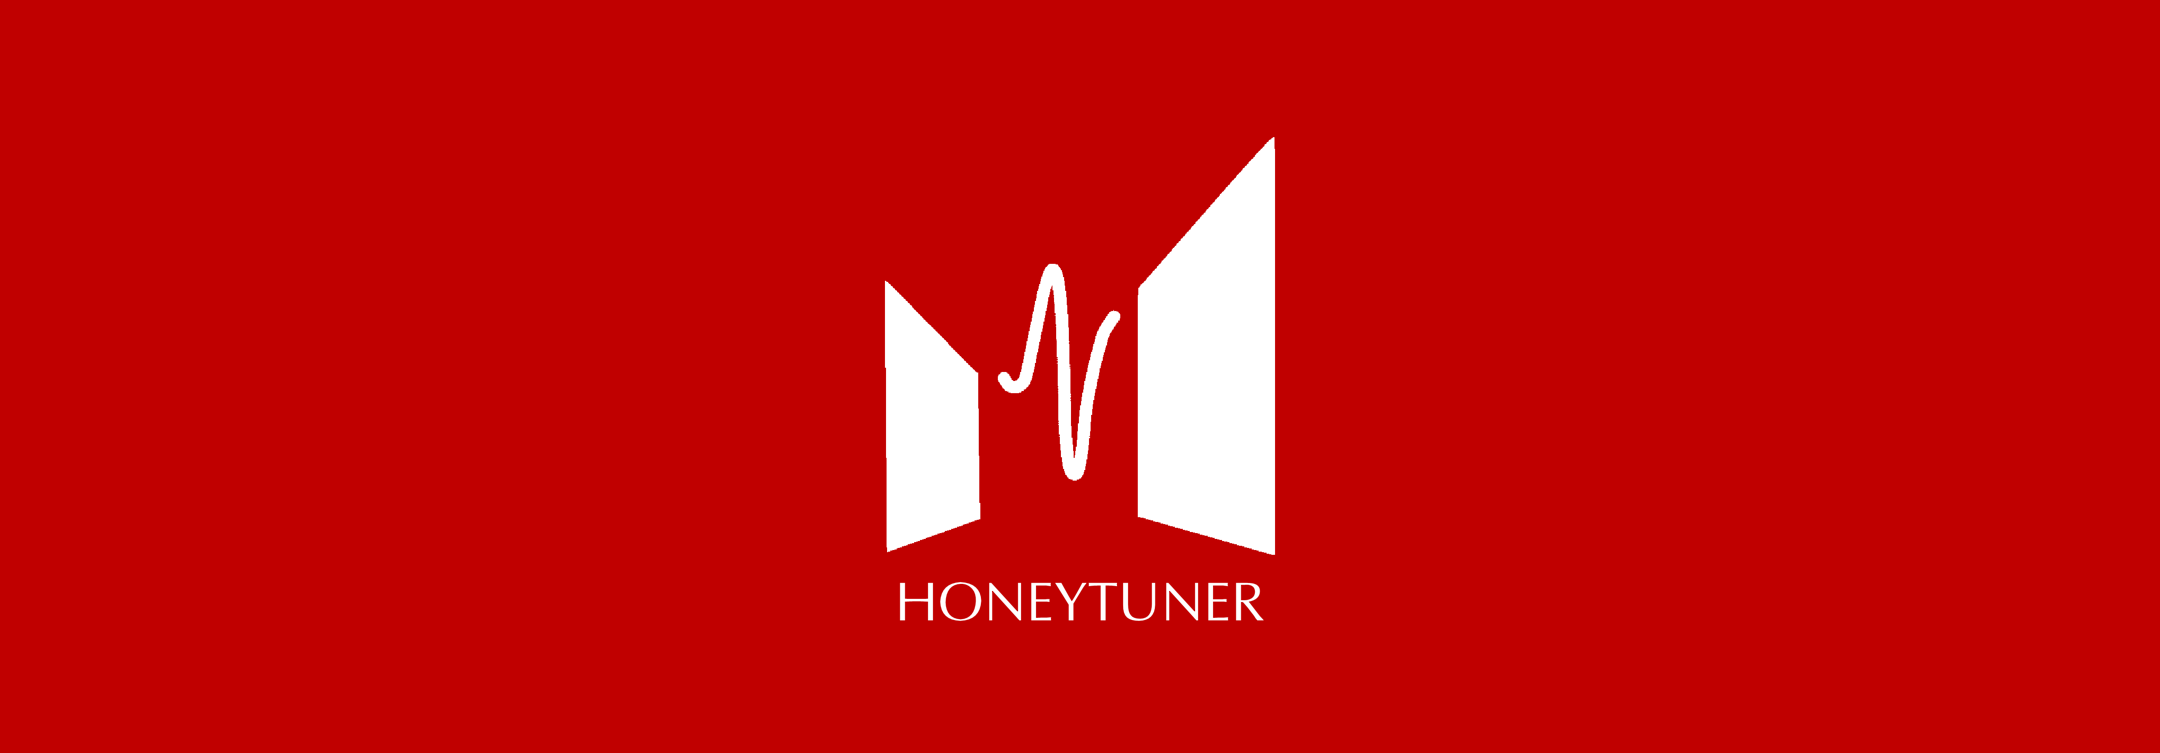 HoneyTuner 一个简洁易用的音频处理工具箱